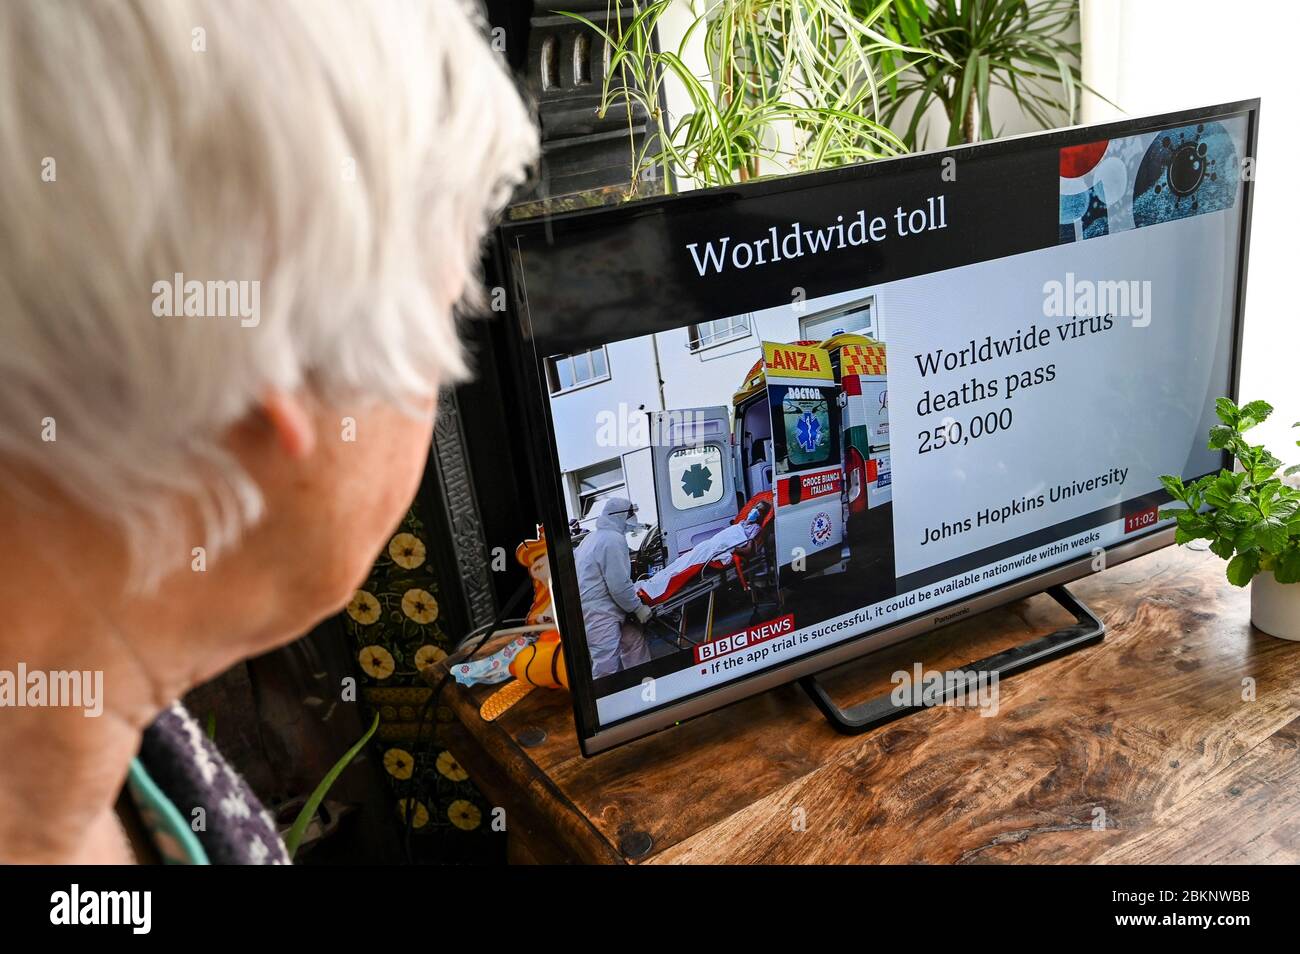 Ältere Frau, die die Nachrichten mit der Überschrift "weltweite Virustodesfälle passieren 250,000" und einem Bild von einem Patienten, der in einen Krankenwagen gehoben wird, beobachtet. Stockfoto